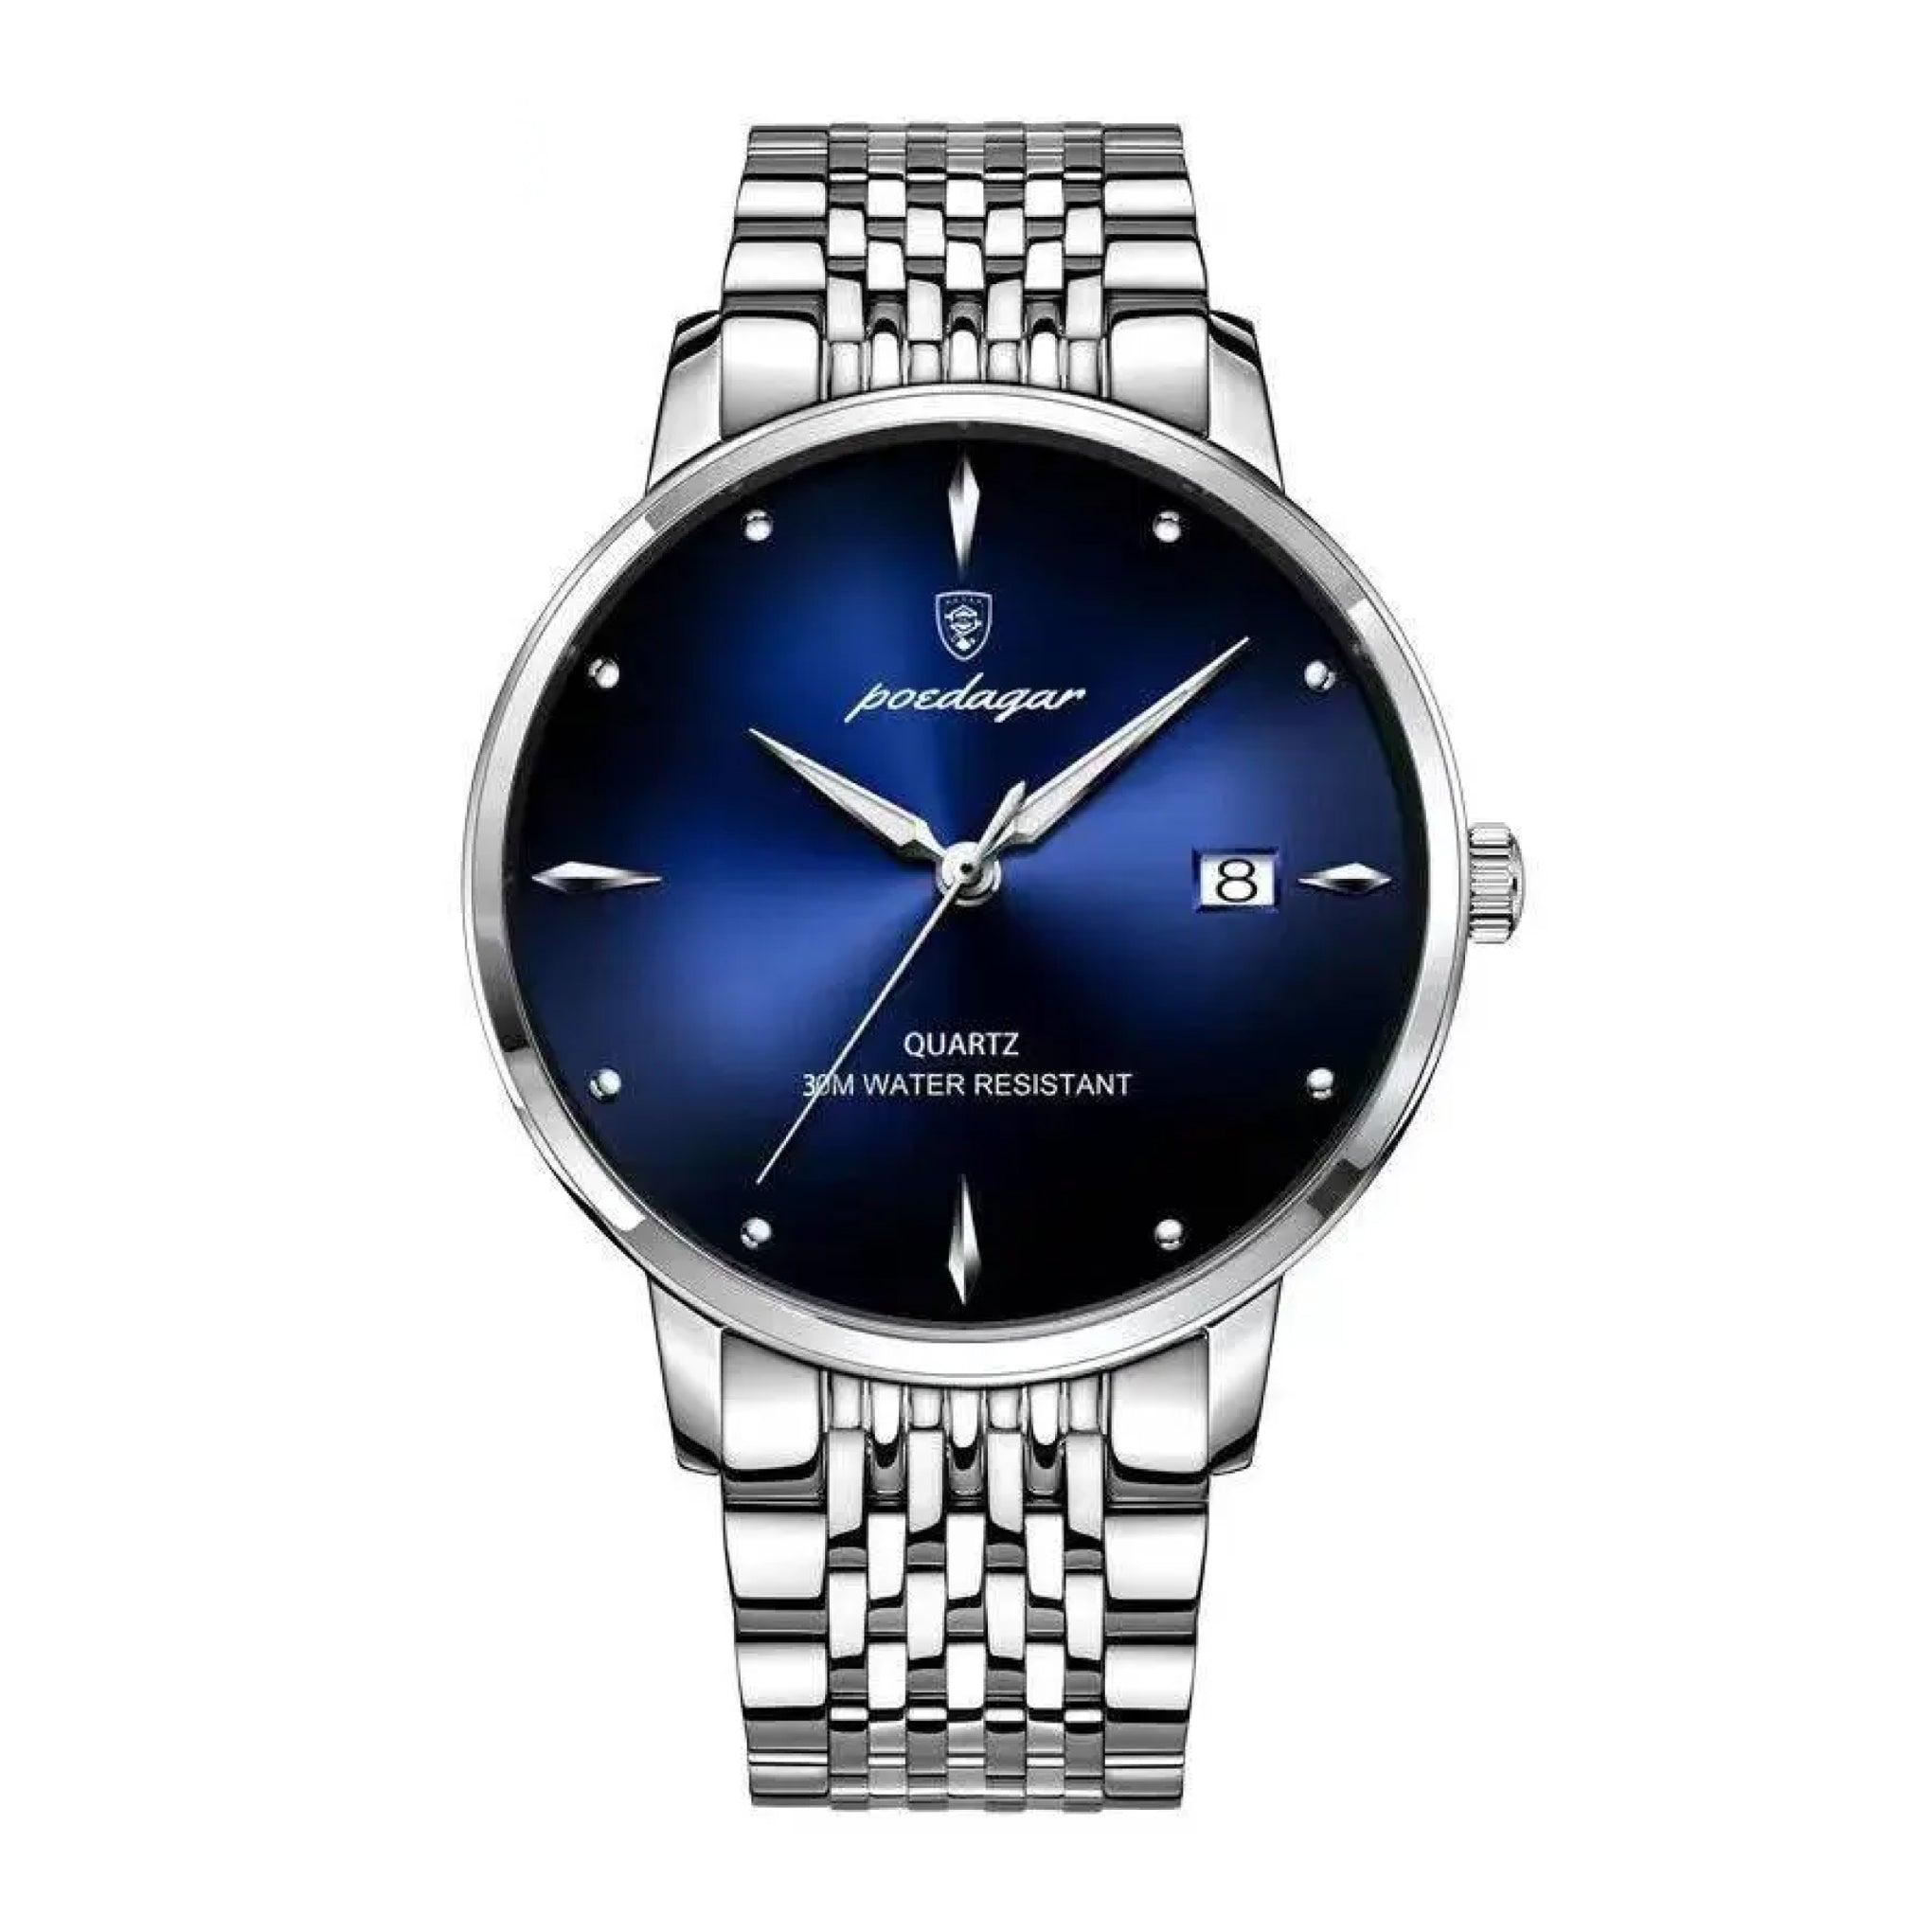 ساعة رجاليه ستانلس ستيل بويدغار Poedagar Men's Analog Quartz Silver Stainless Steel Band Blue Dial Watch - 868slbusp